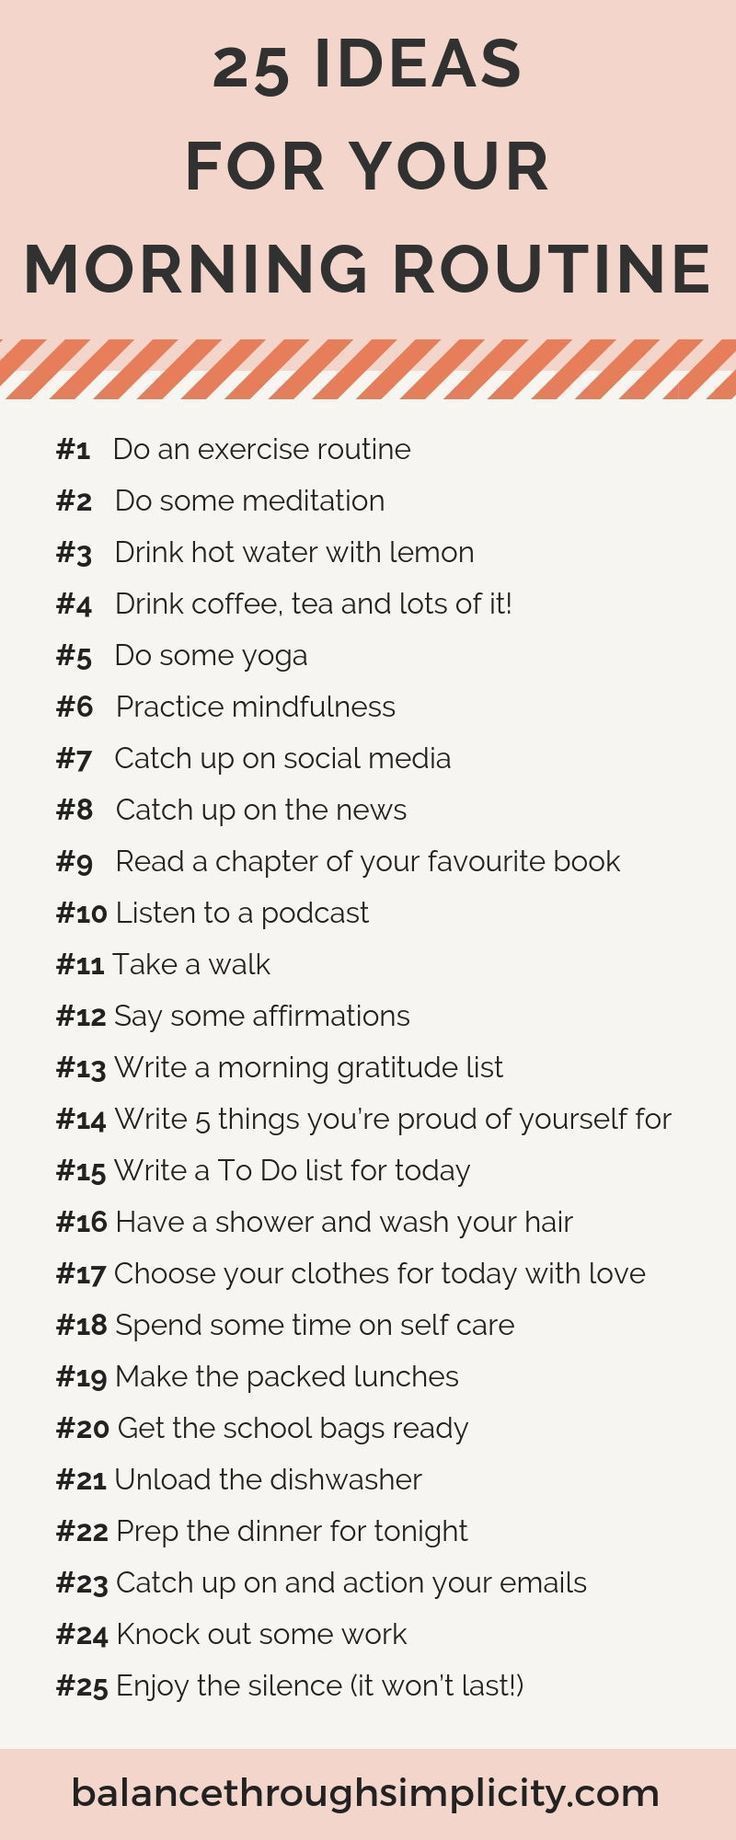 17 morning beauty Tips ideas